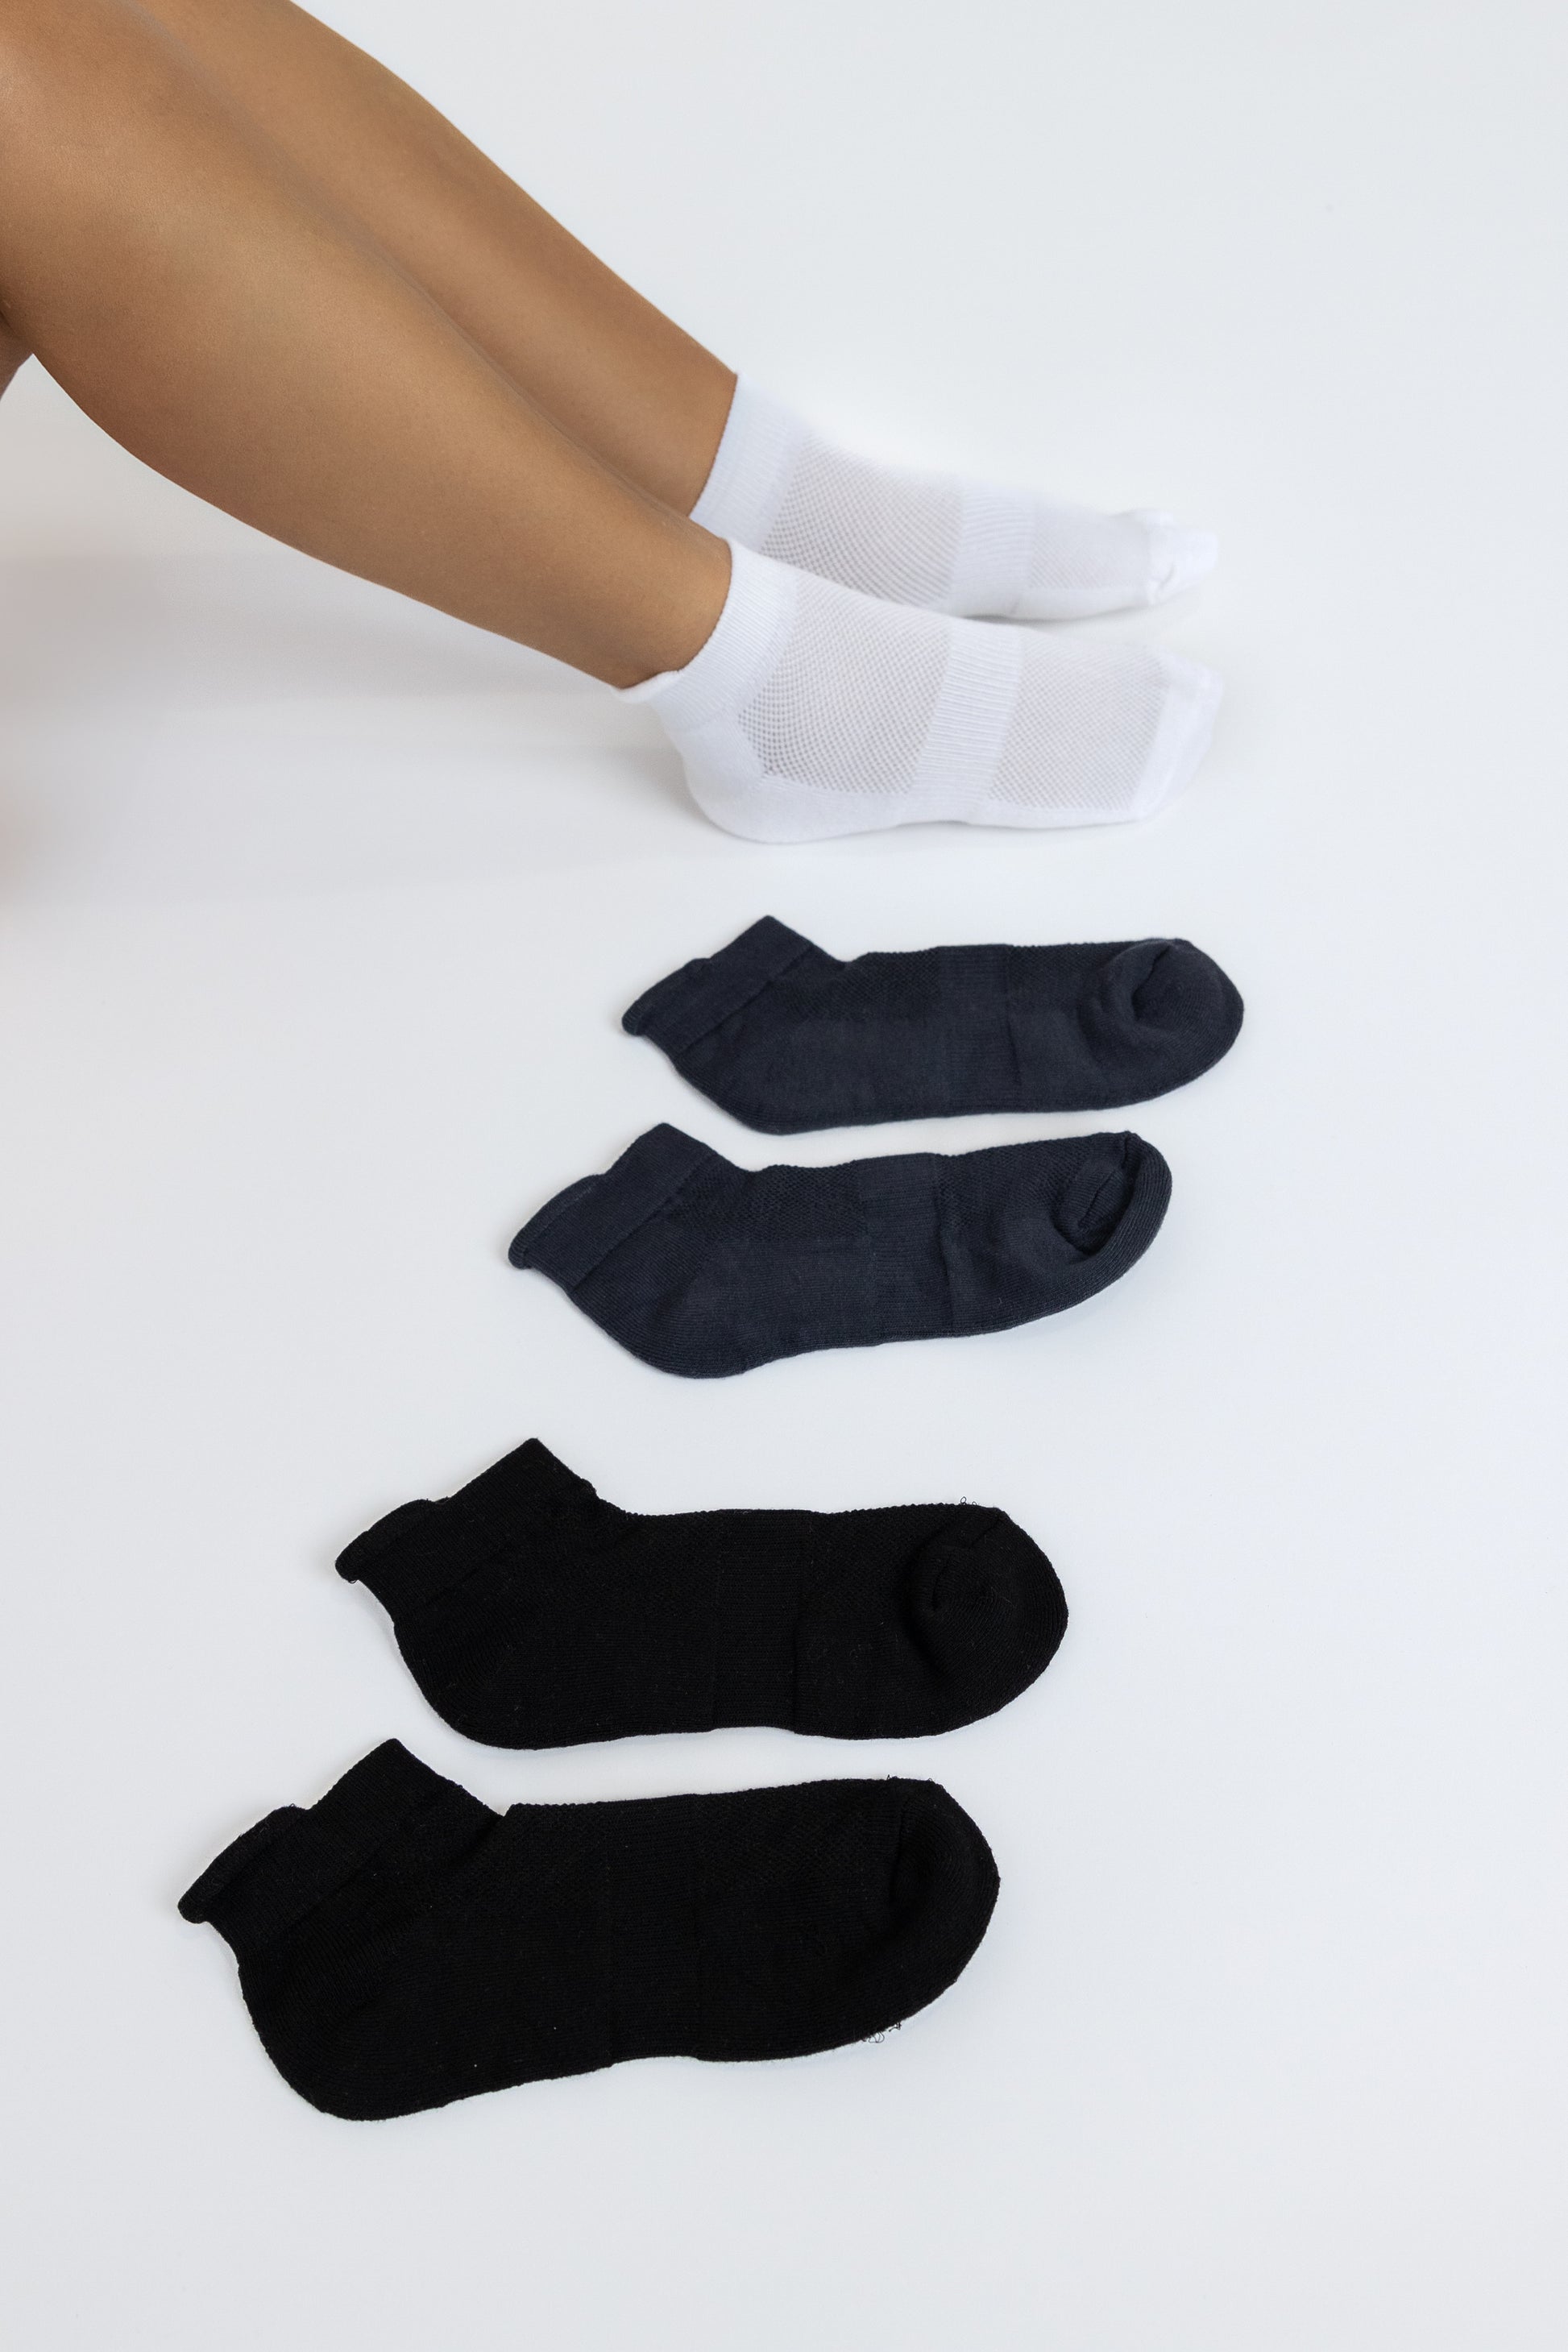 Bamboo Socks for Women, Breathable & Soft